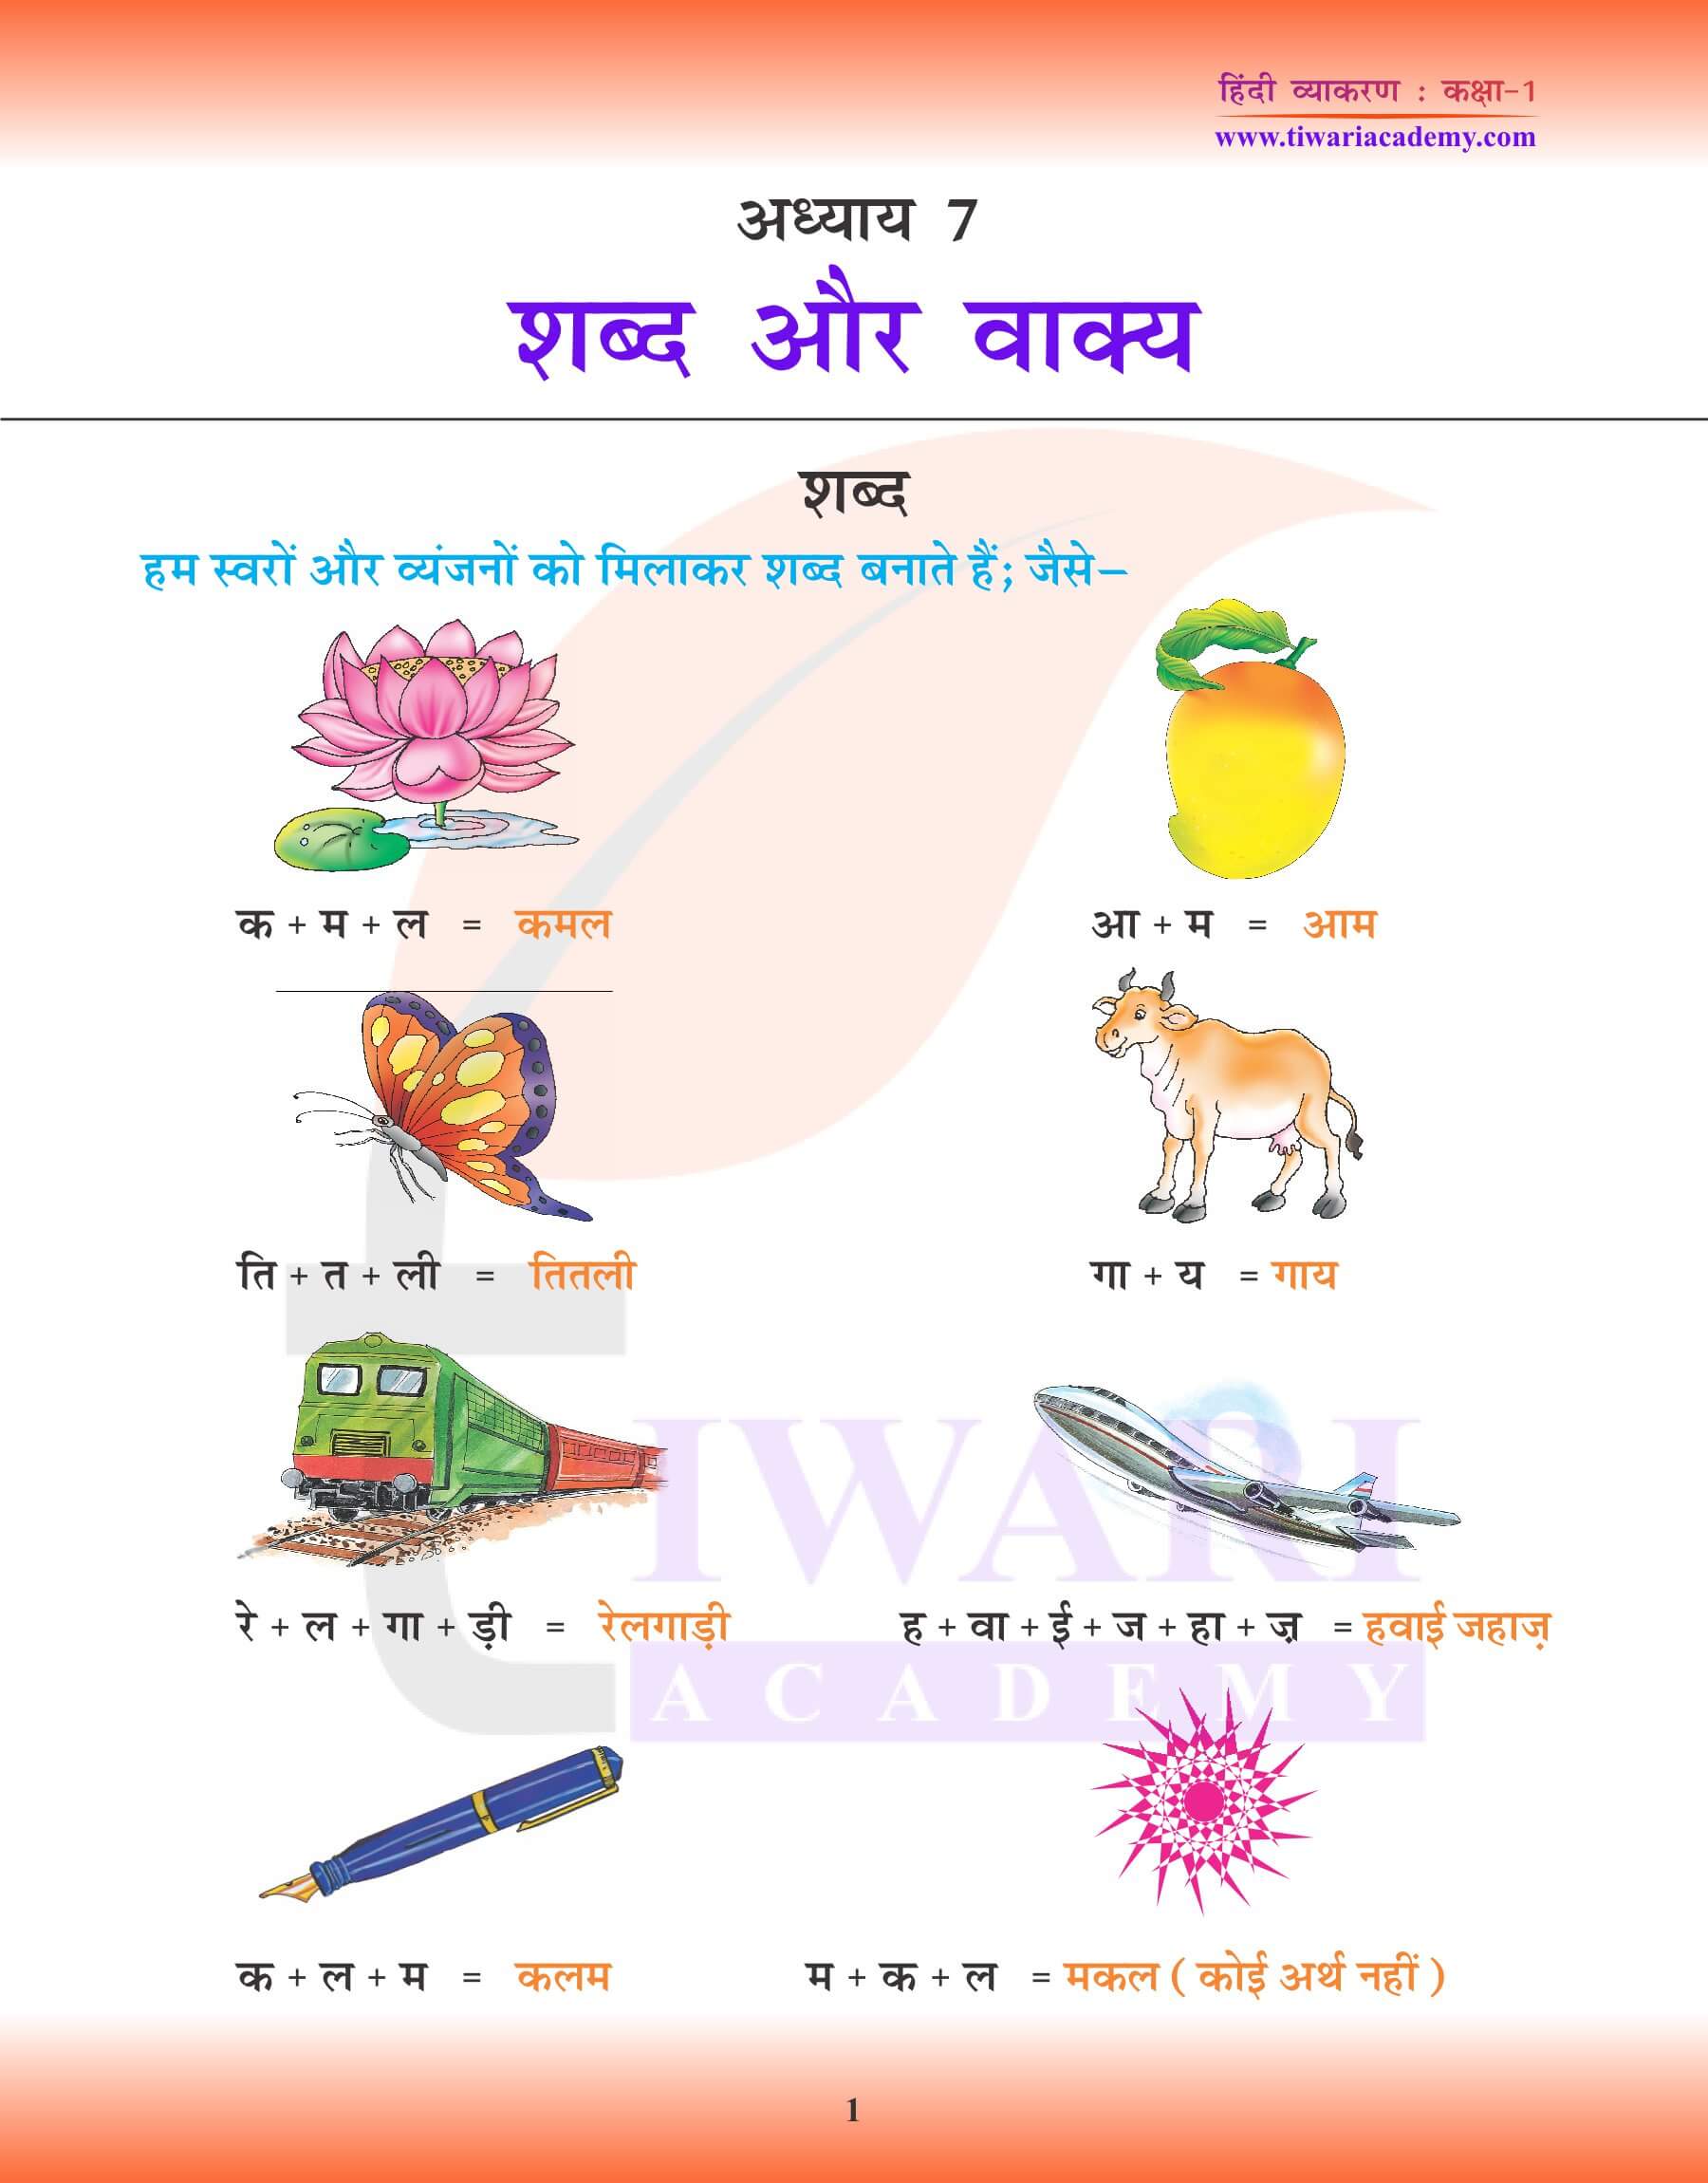 कक्षा 1 हिंदी व्याकरण पाठ 7 शब्द और वाक्य